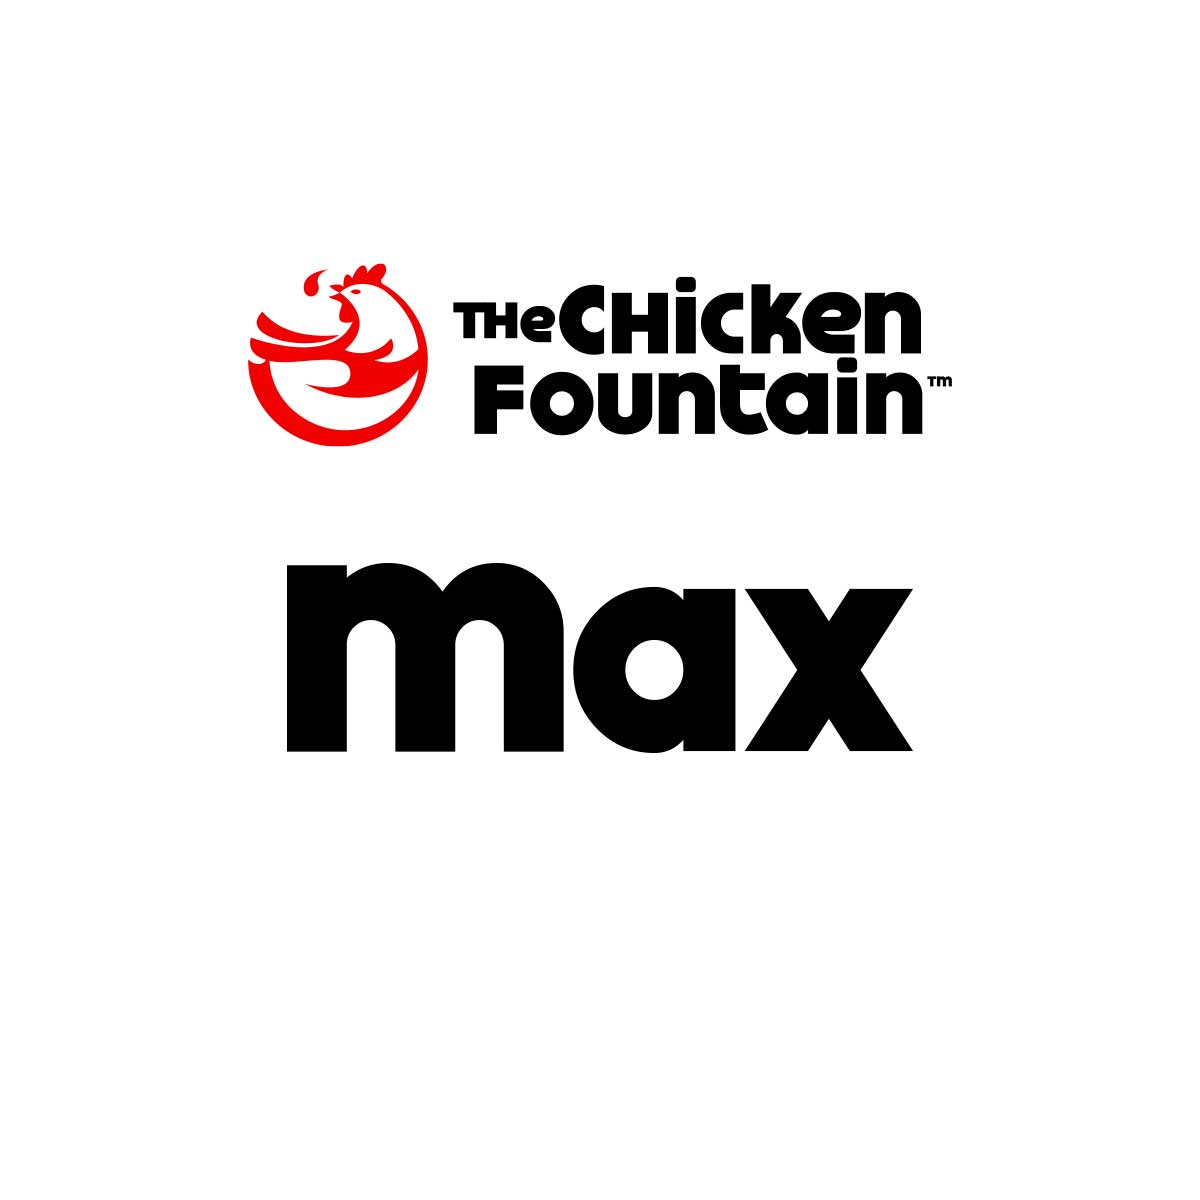 The Chicken Fountain Max